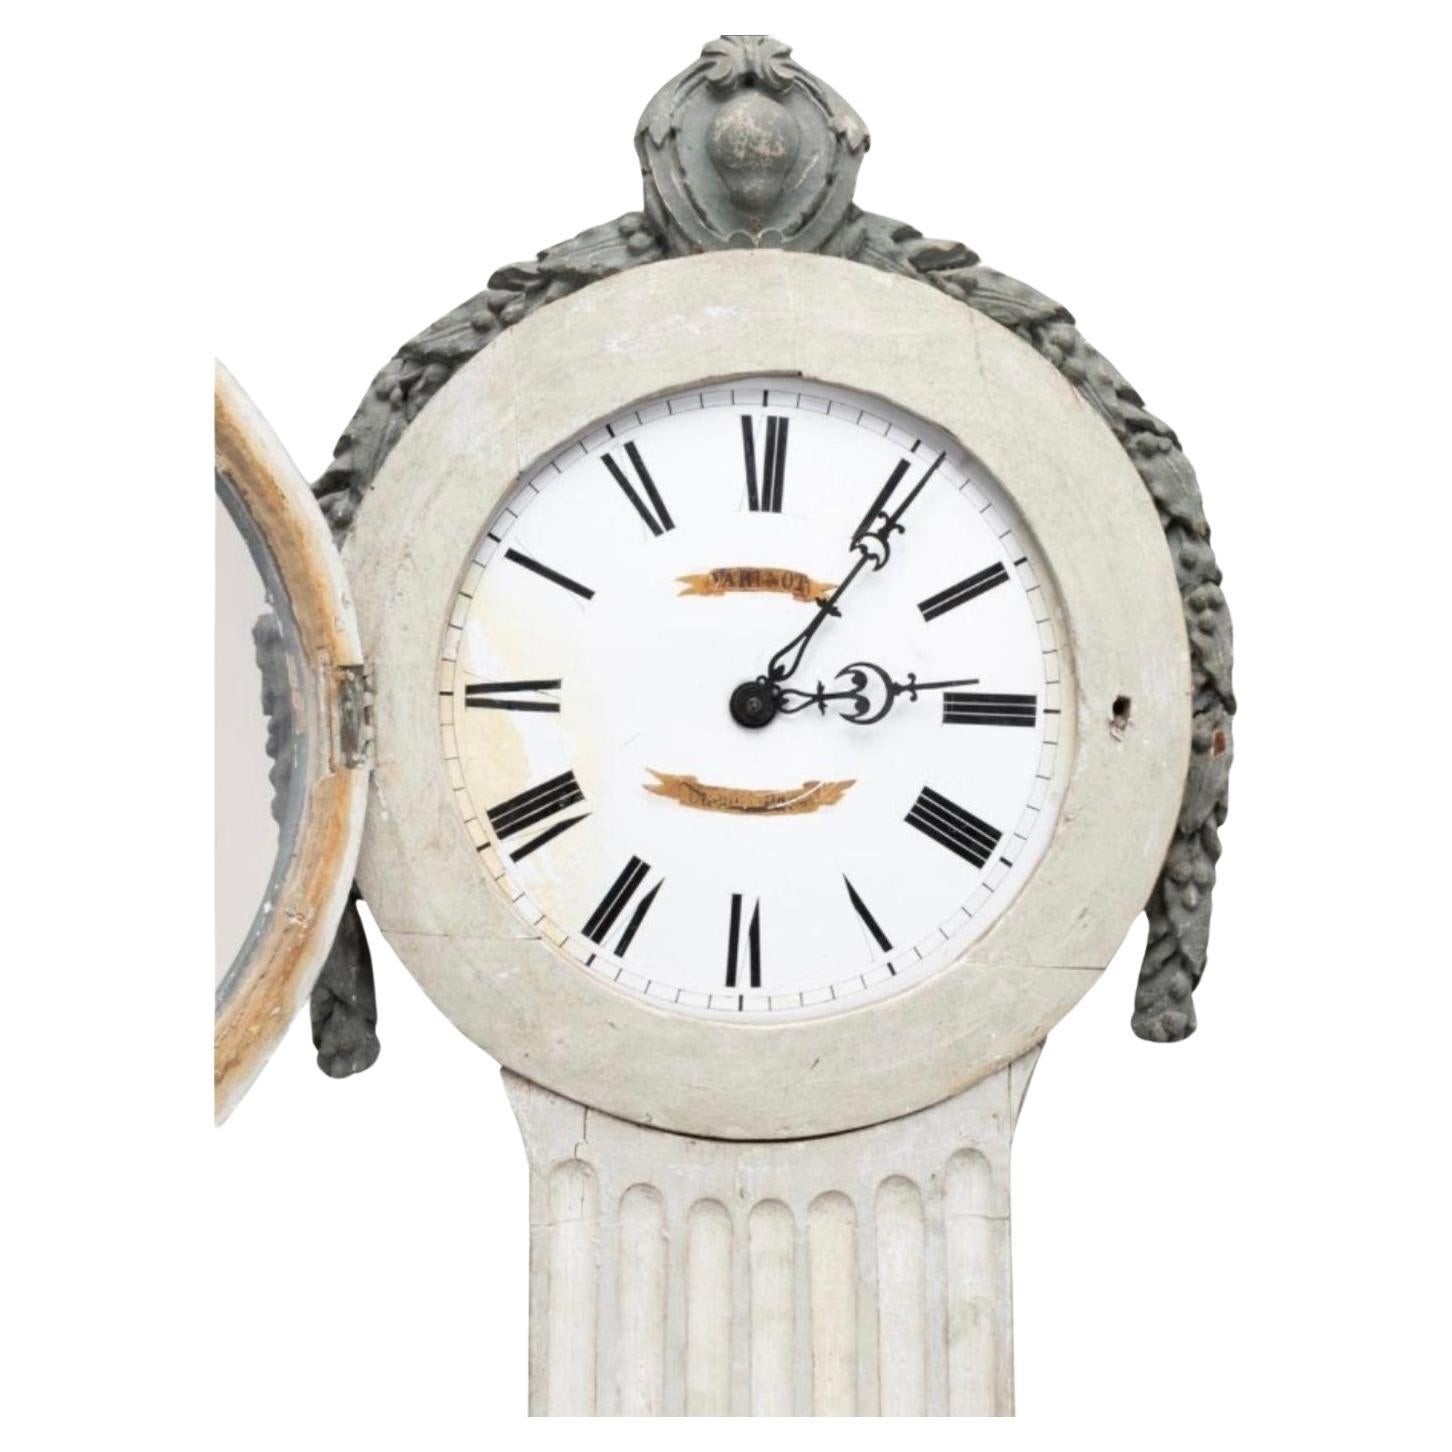 Incroyablement rare horloge suédoise néoclassique en pin peint en gris, fin du XVIIIe ou début du XIXe siècle, avec une hotte circulaire surmontée d'un cartouche, le cadran avec des chiffres romains et le nom illisible du fabricant, reposant sur un